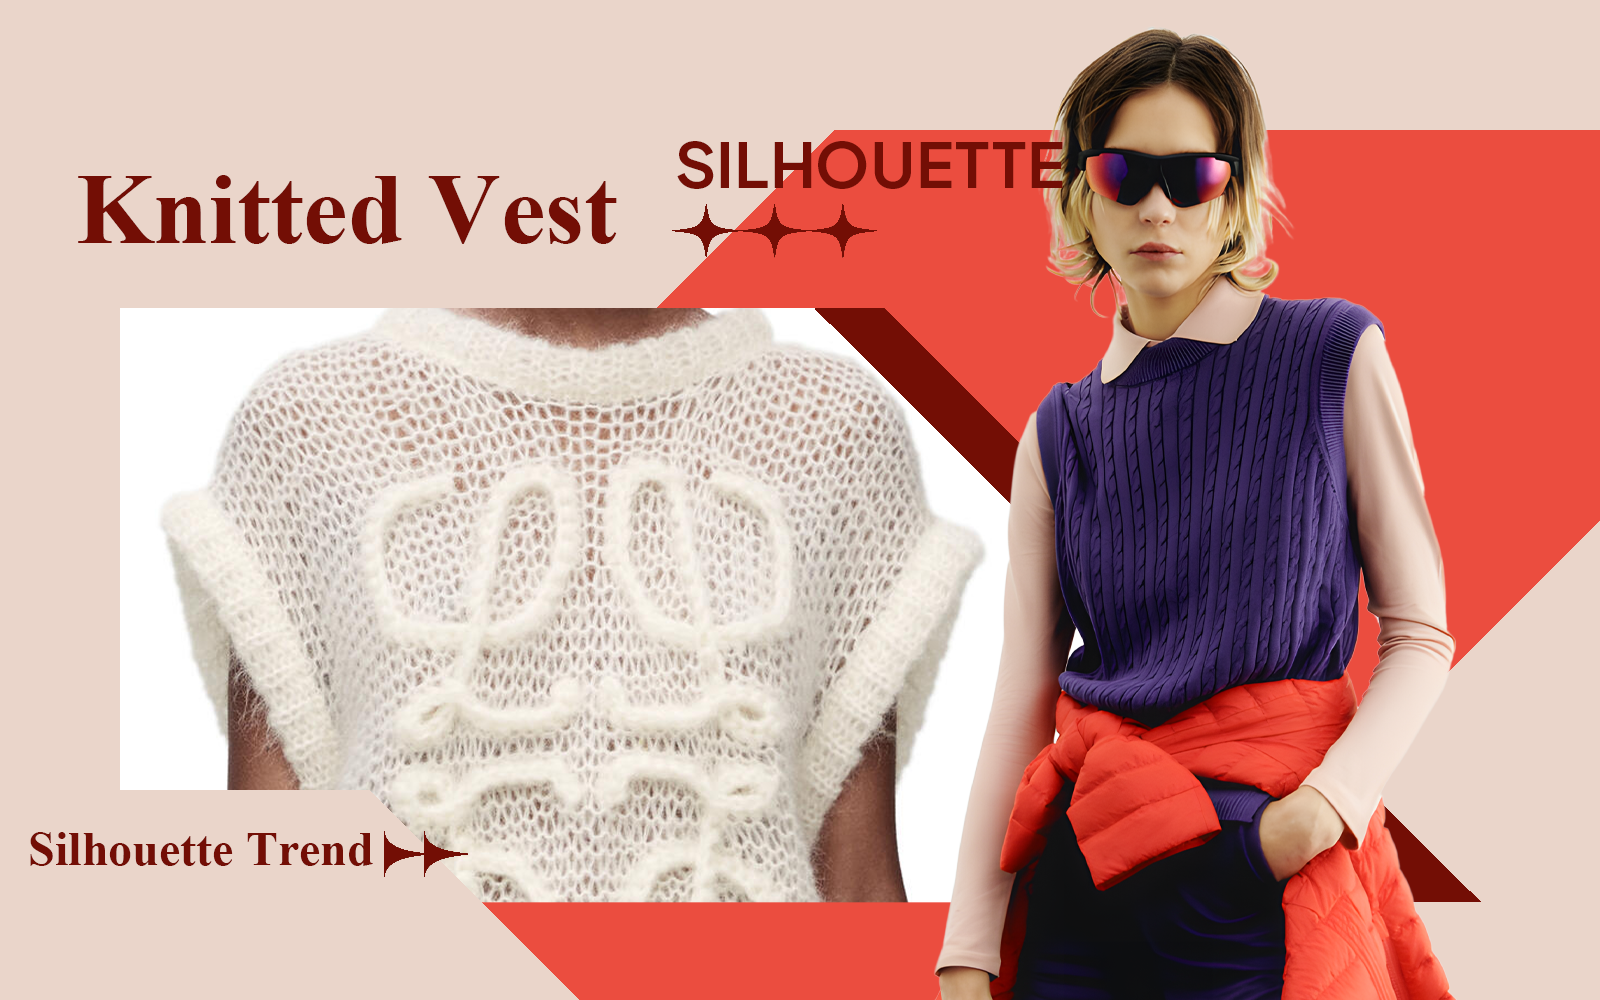 Vest -- A/W 24/25 The Silhouette Trend for Women's Knitwear